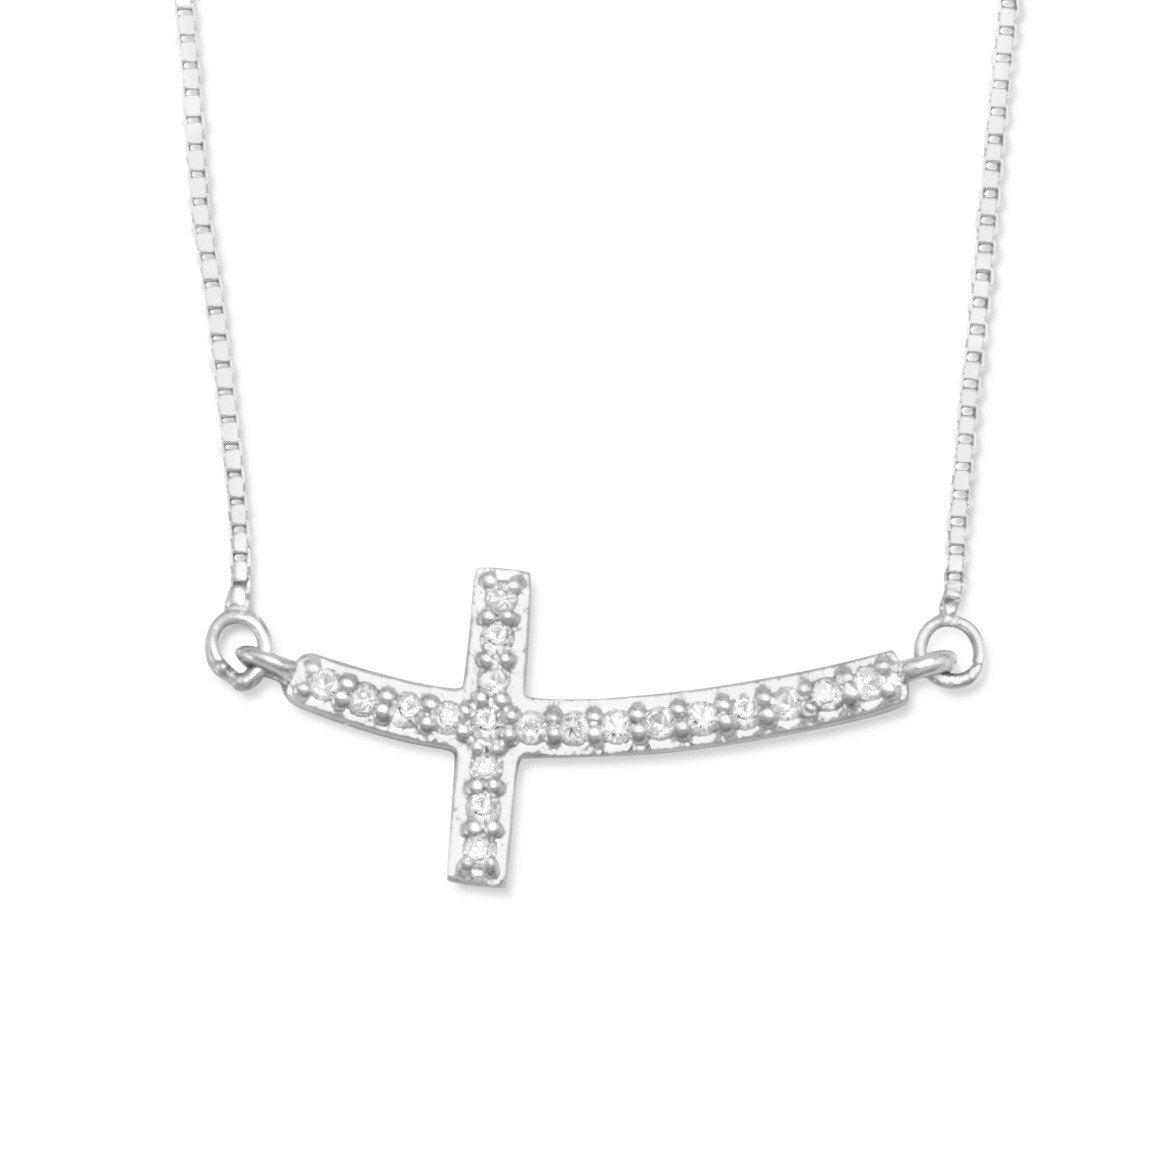 Rhodium Plated Sideways Cross Necklace with Diamonds - Joyeria Lady